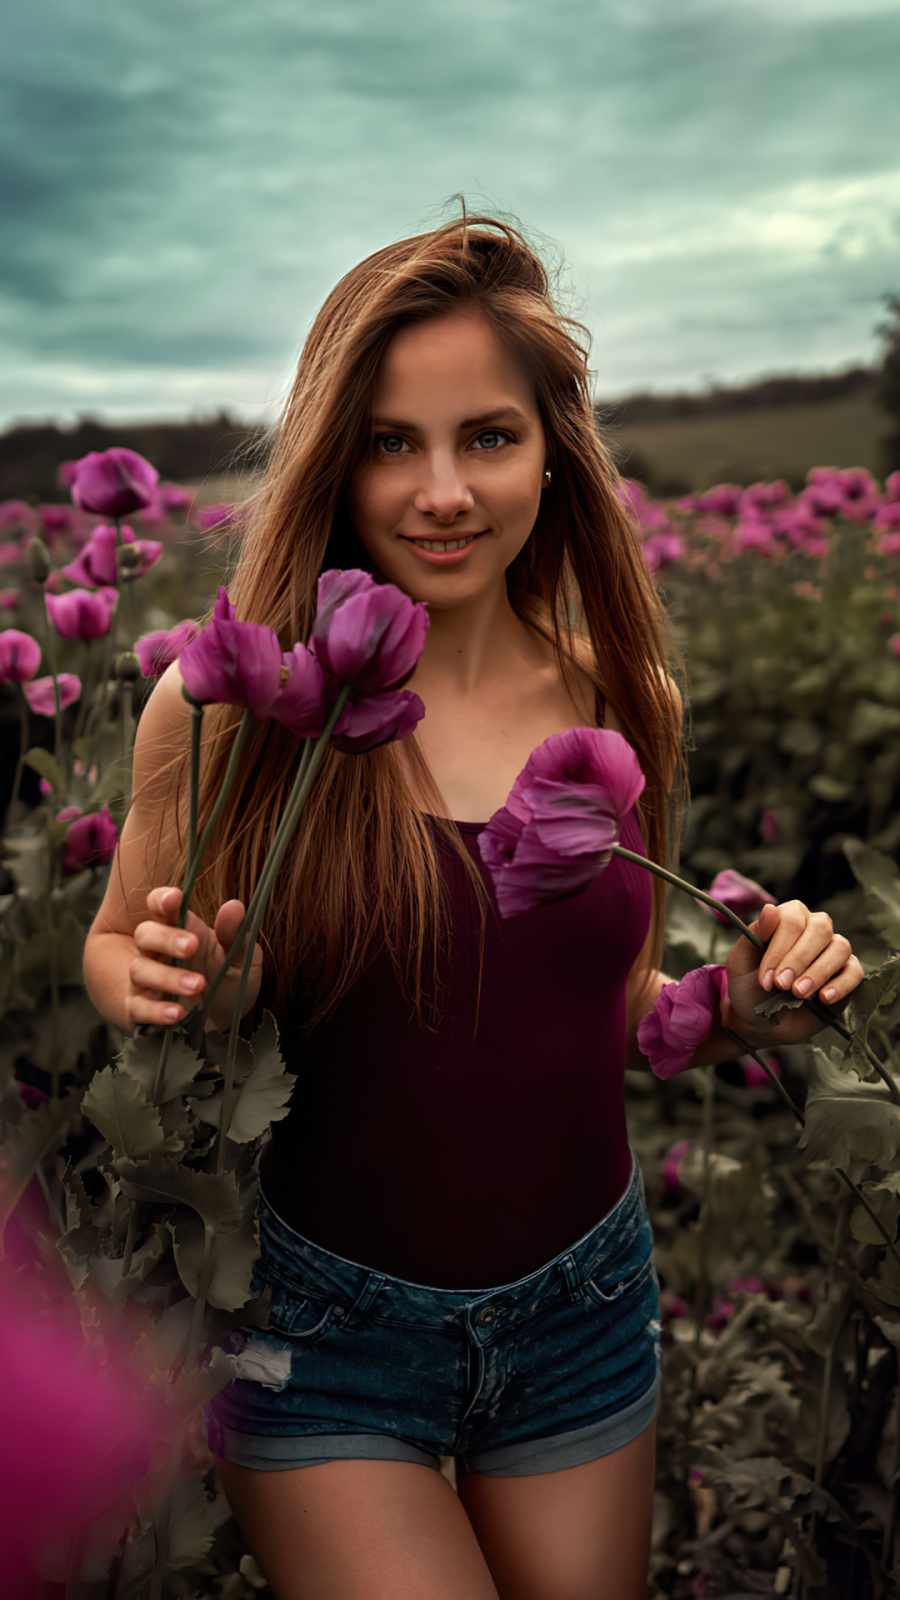 long hair women outdoor in flower field iPhone Wallpaper